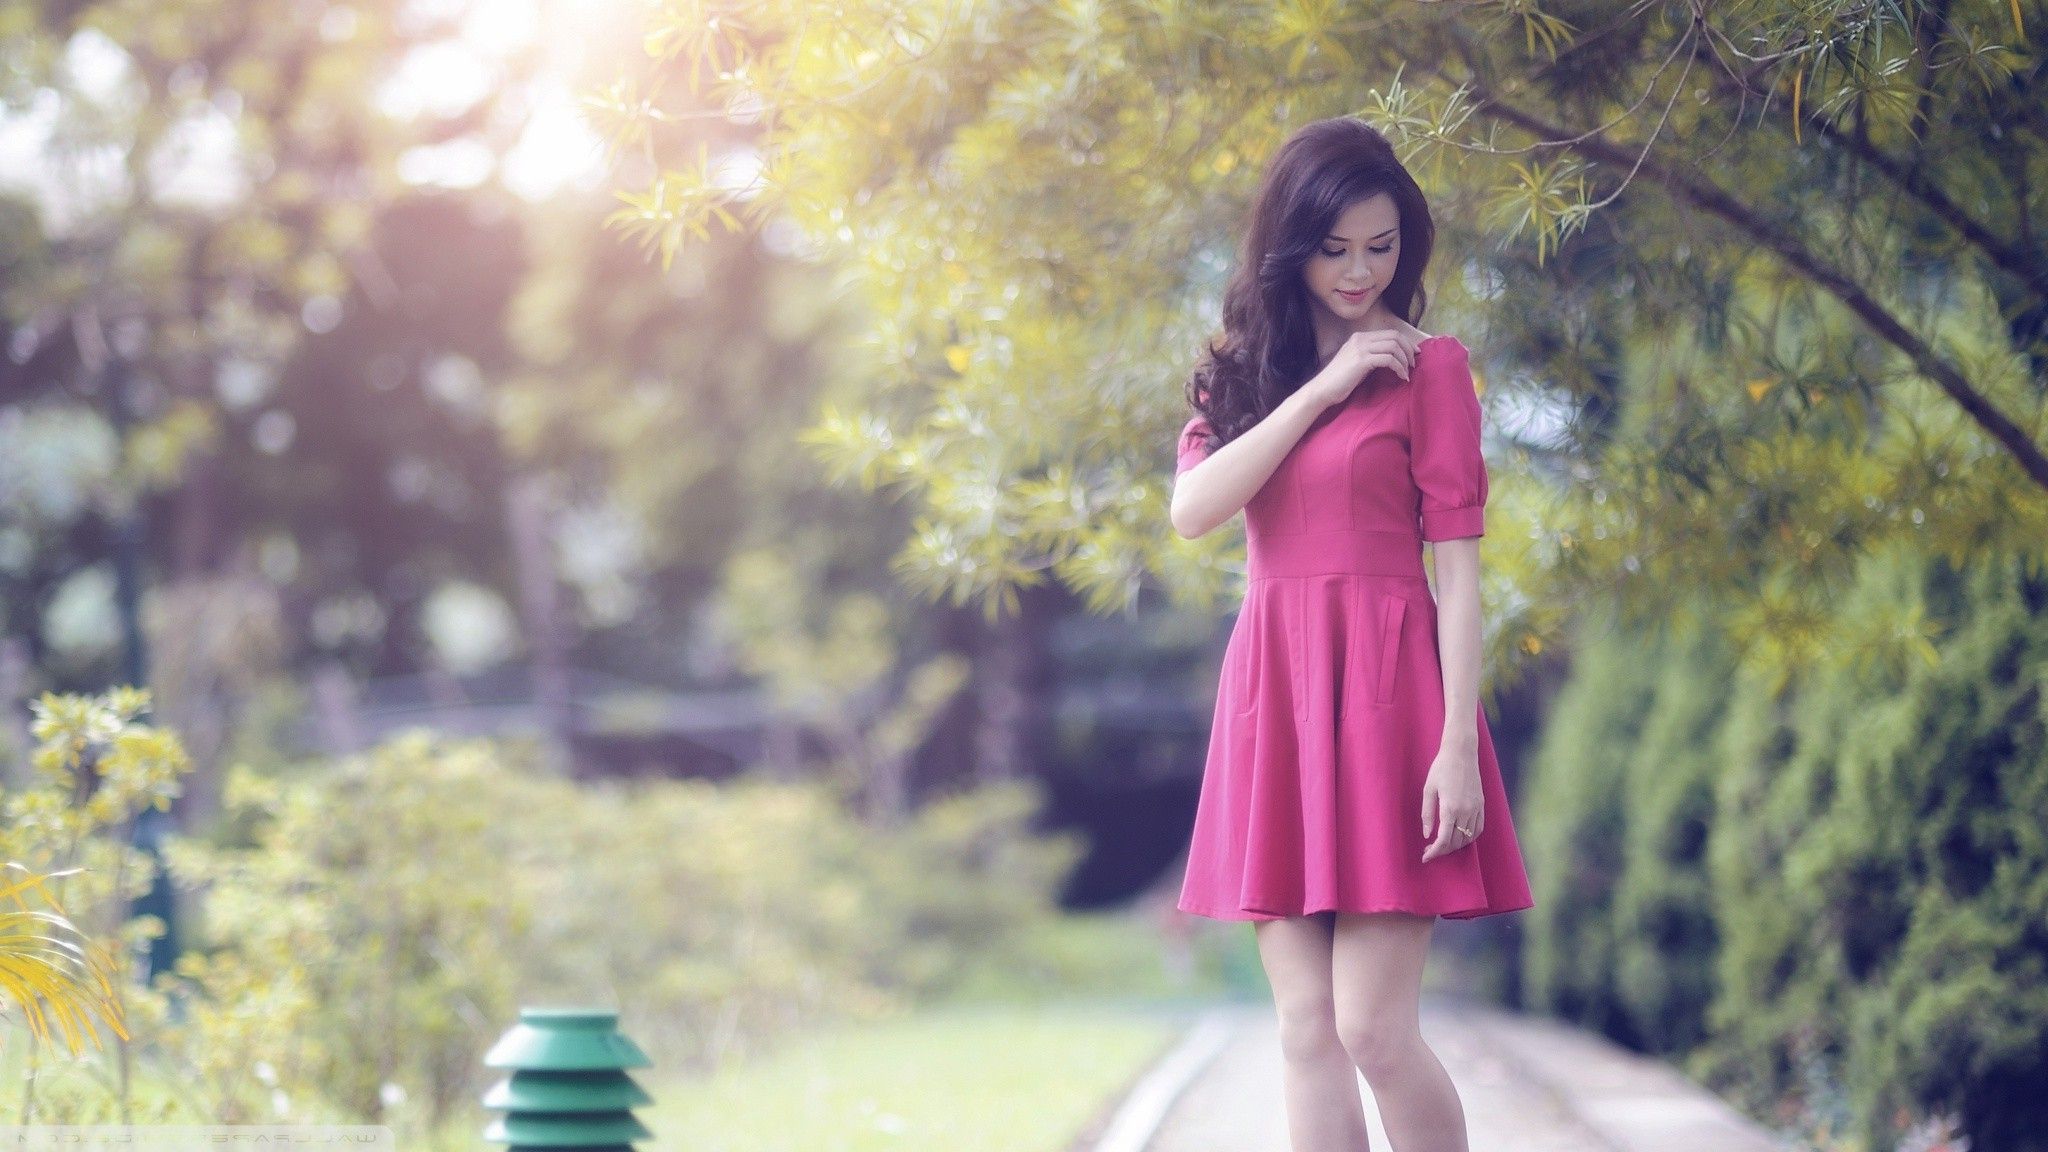 Asian, Red Dress, Garden, Women Wallpaper HD / Desktop and Mobile